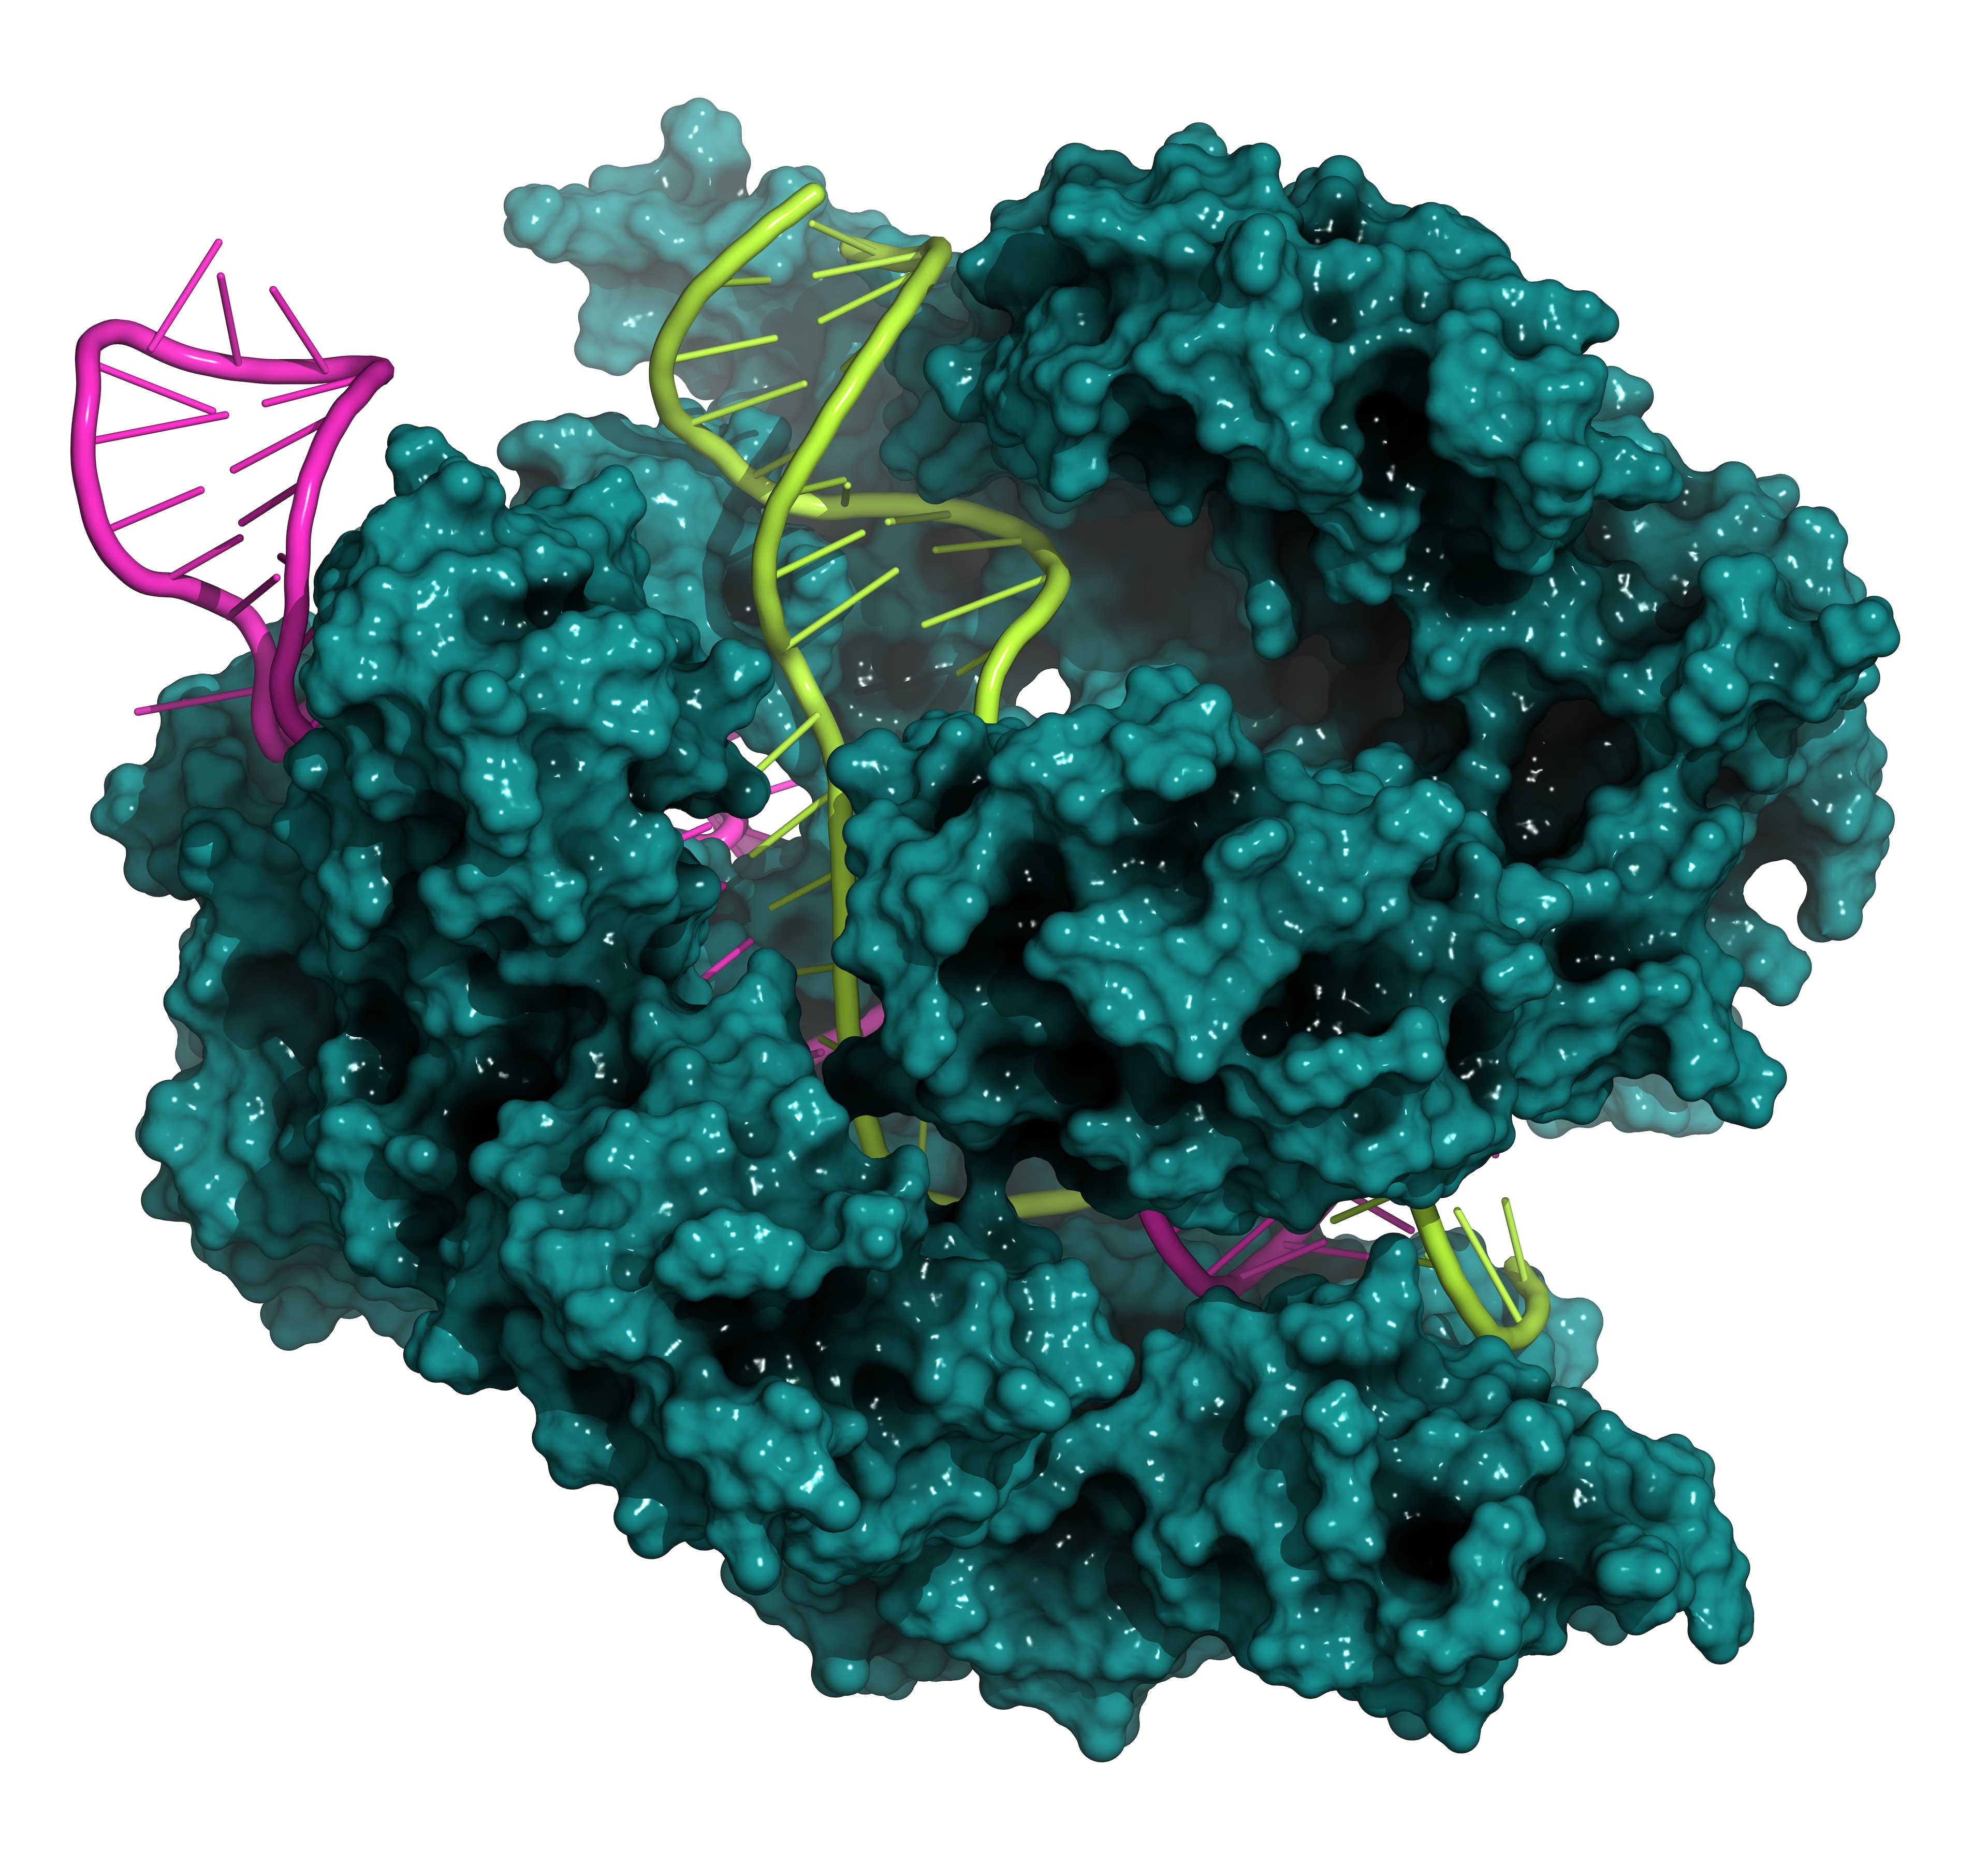 CRISPR cas9 DNA protein complex